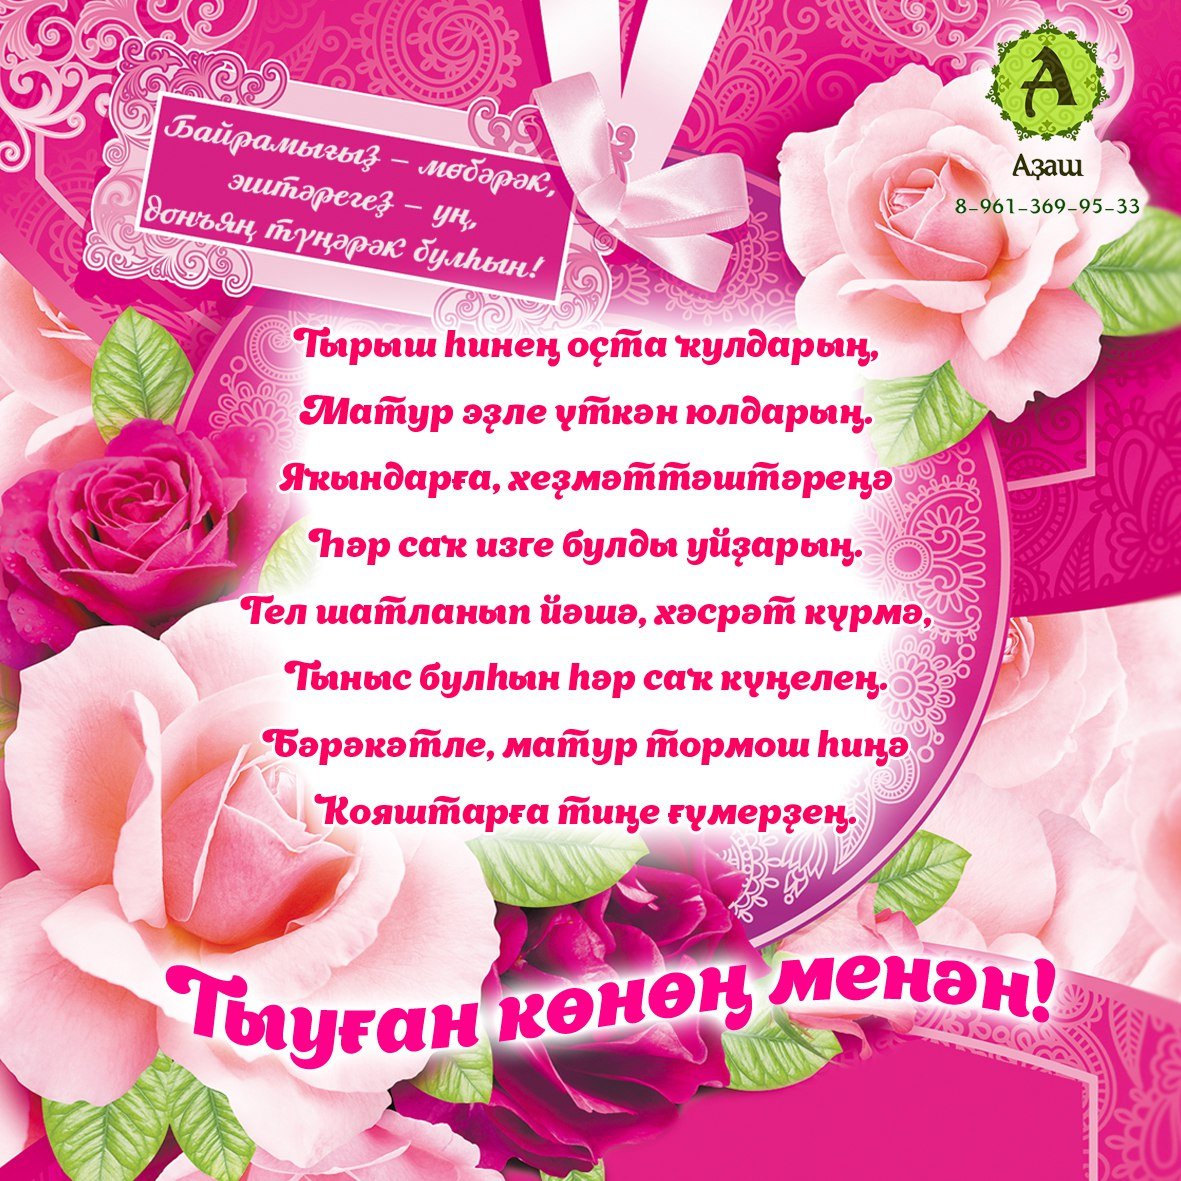 Поздравление сестры на башкирском языке. Поздравления с днём рождения на башкирском. Поздравление с юбилеем на башкирском. Поздравления с днём рождения на башкирском языке. Поздравления с днём рождения маме на башкирском языке.